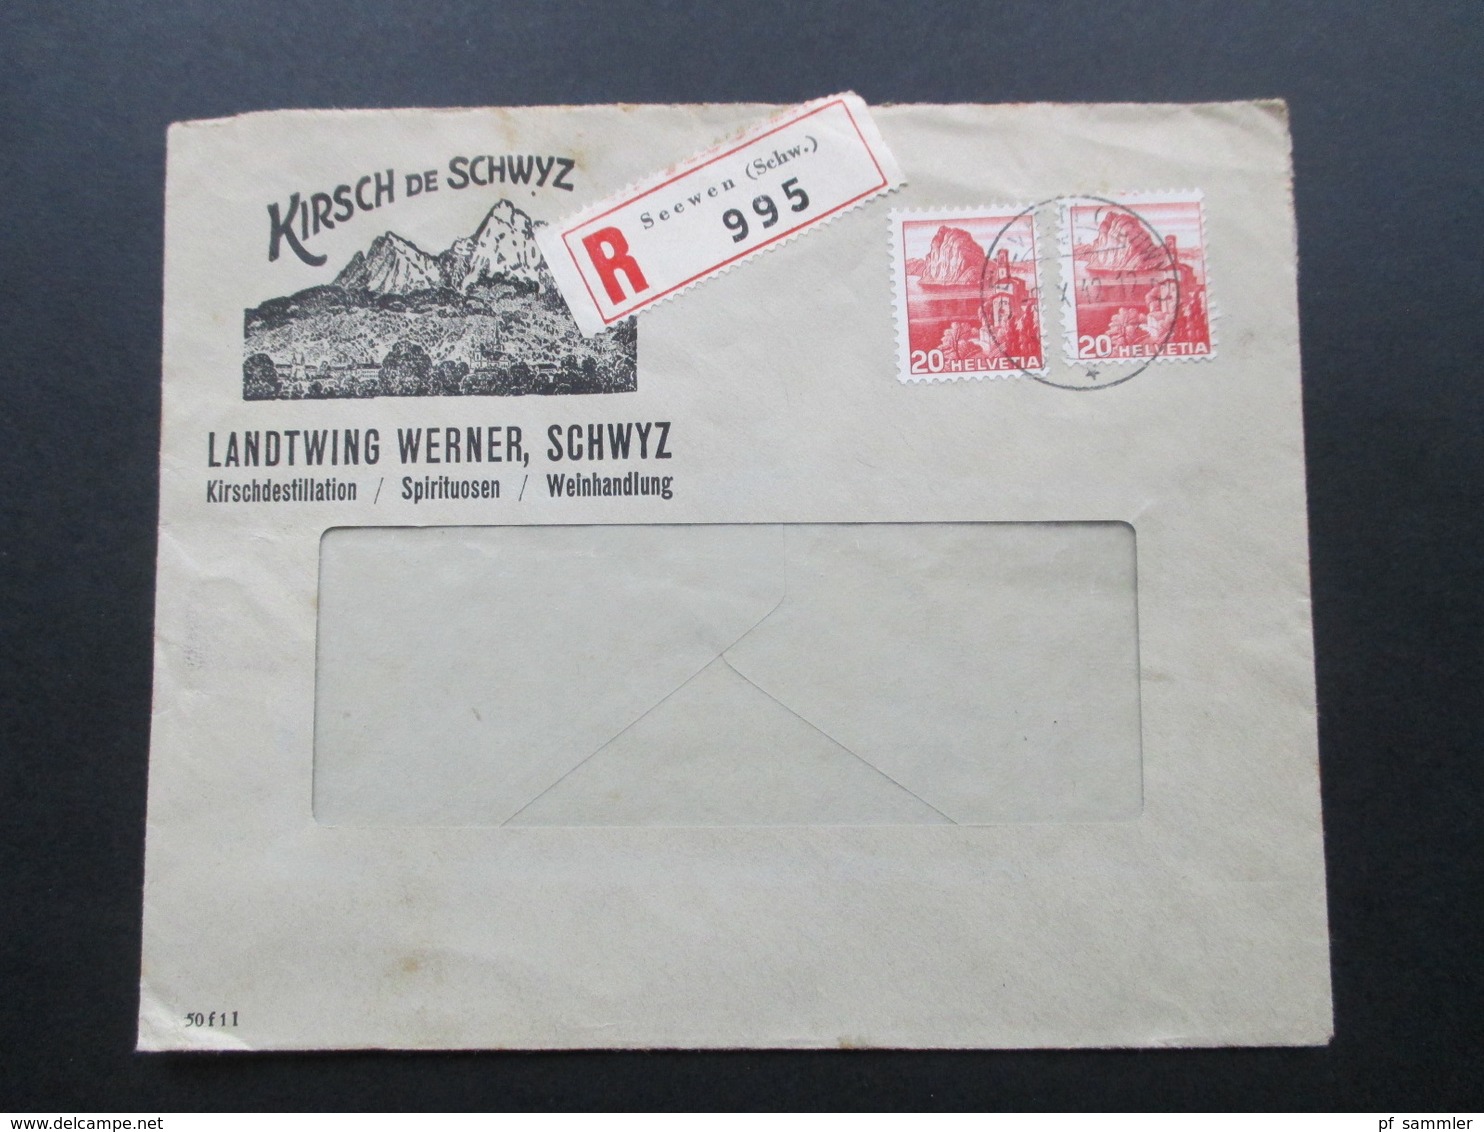 Schweiz 1942 Firmenbrief Kirsch De Schwyz Landtwing Werner. Kirschdetillation, Spirituosen, Weinhandlung. R-Brief Seewen - Briefe U. Dokumente